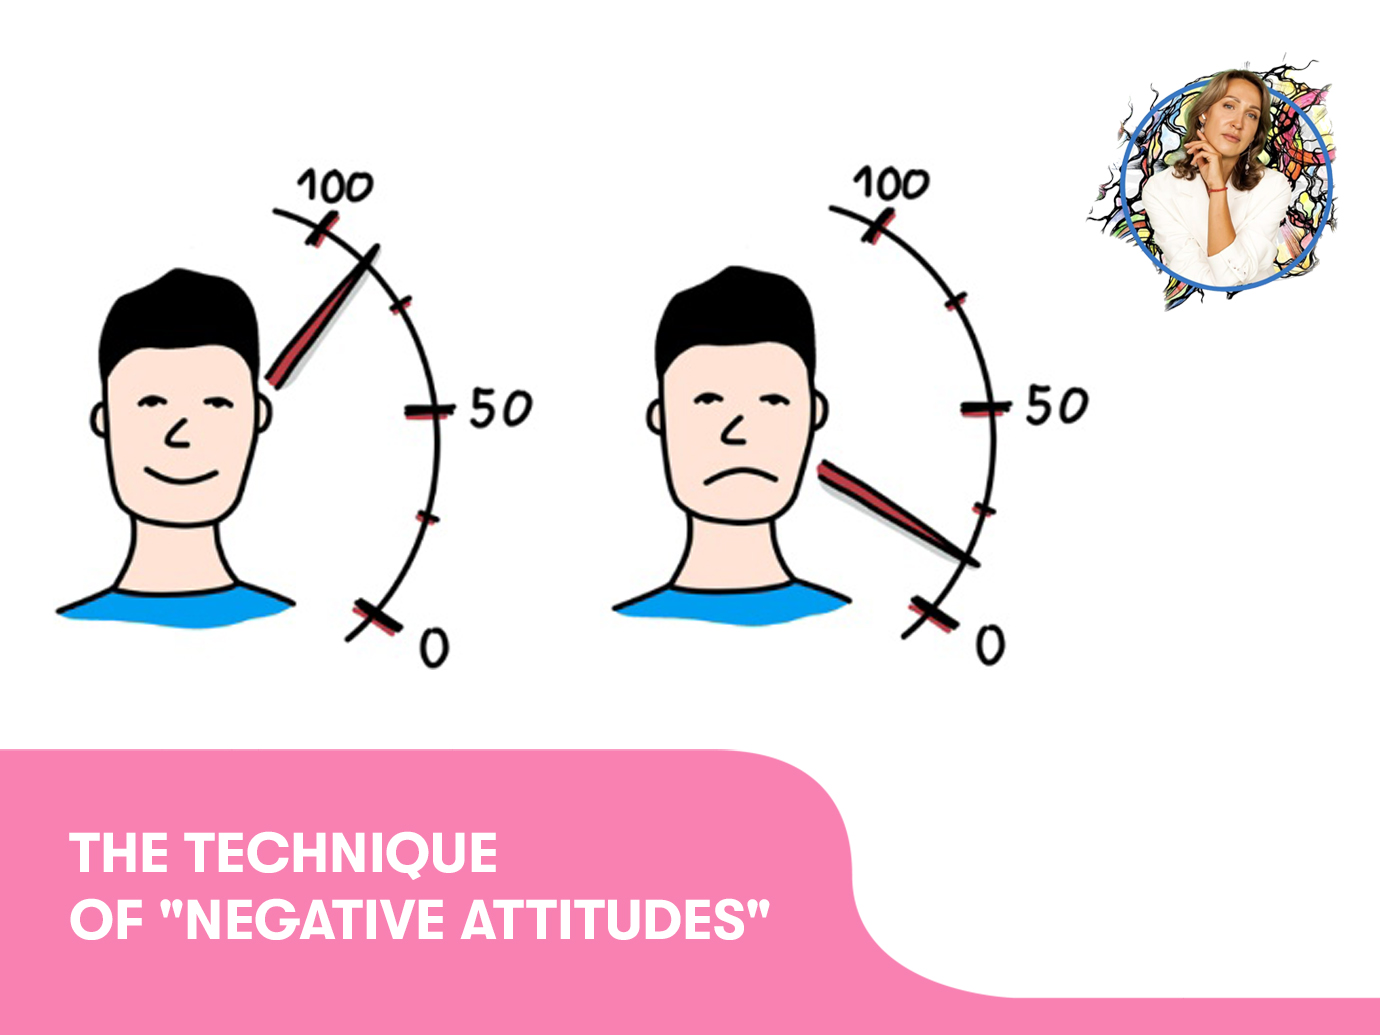 The technique of “Negative attitudes“